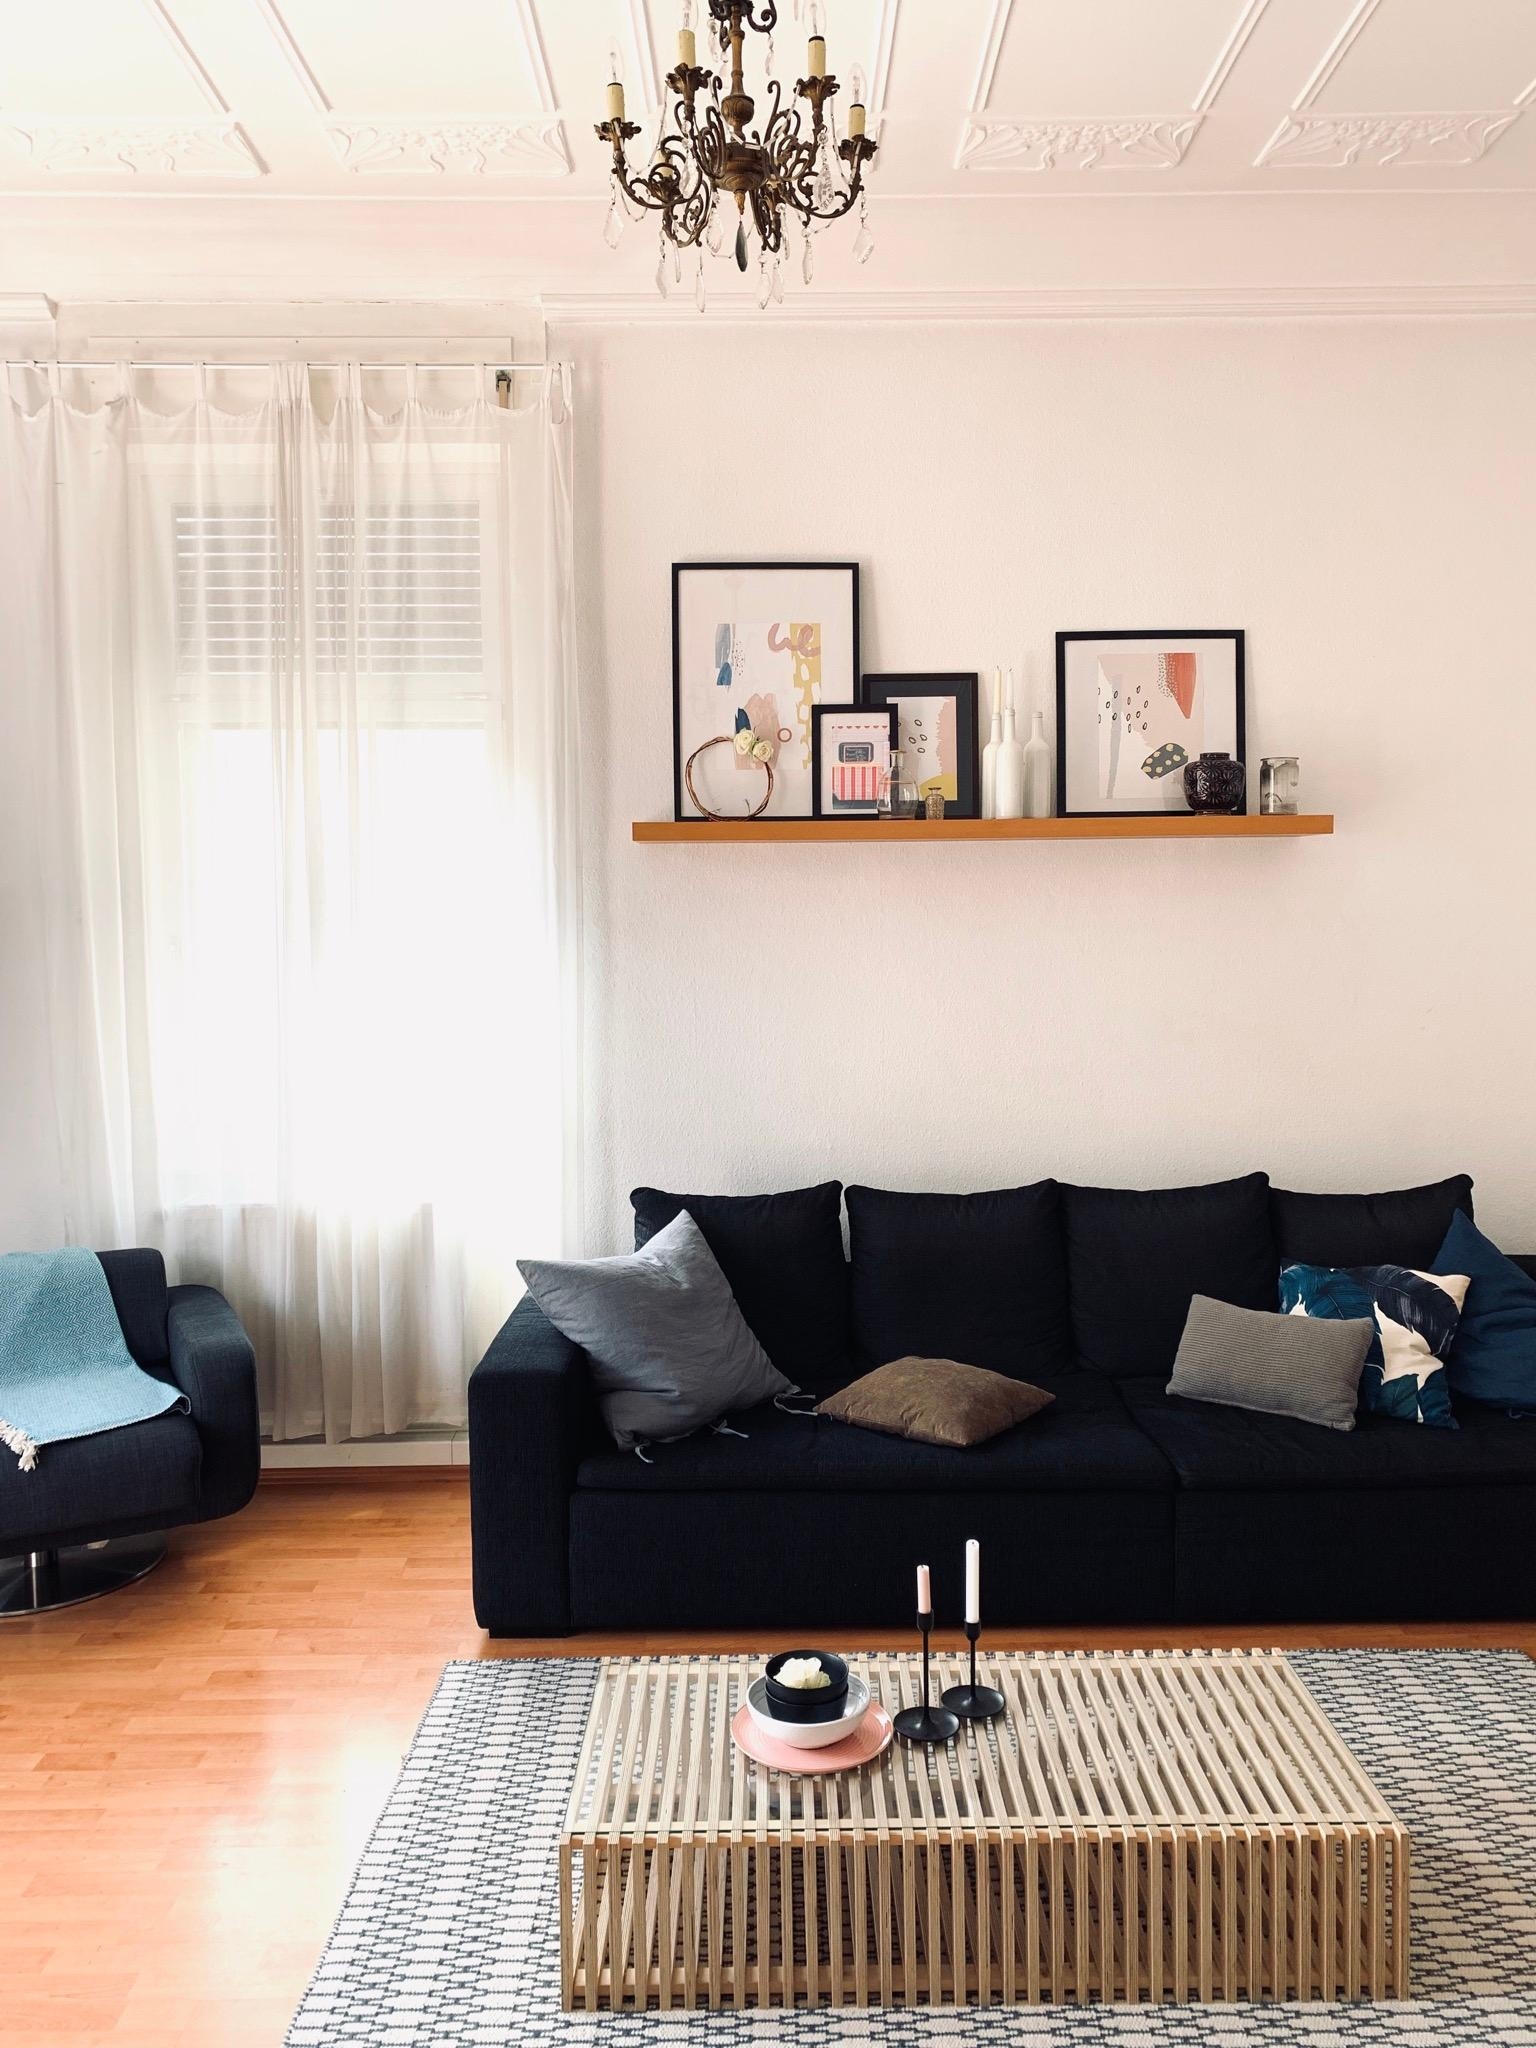 hello from the #livingroom. #wohnzimmer #interiordesign #couchliebt #altbau 